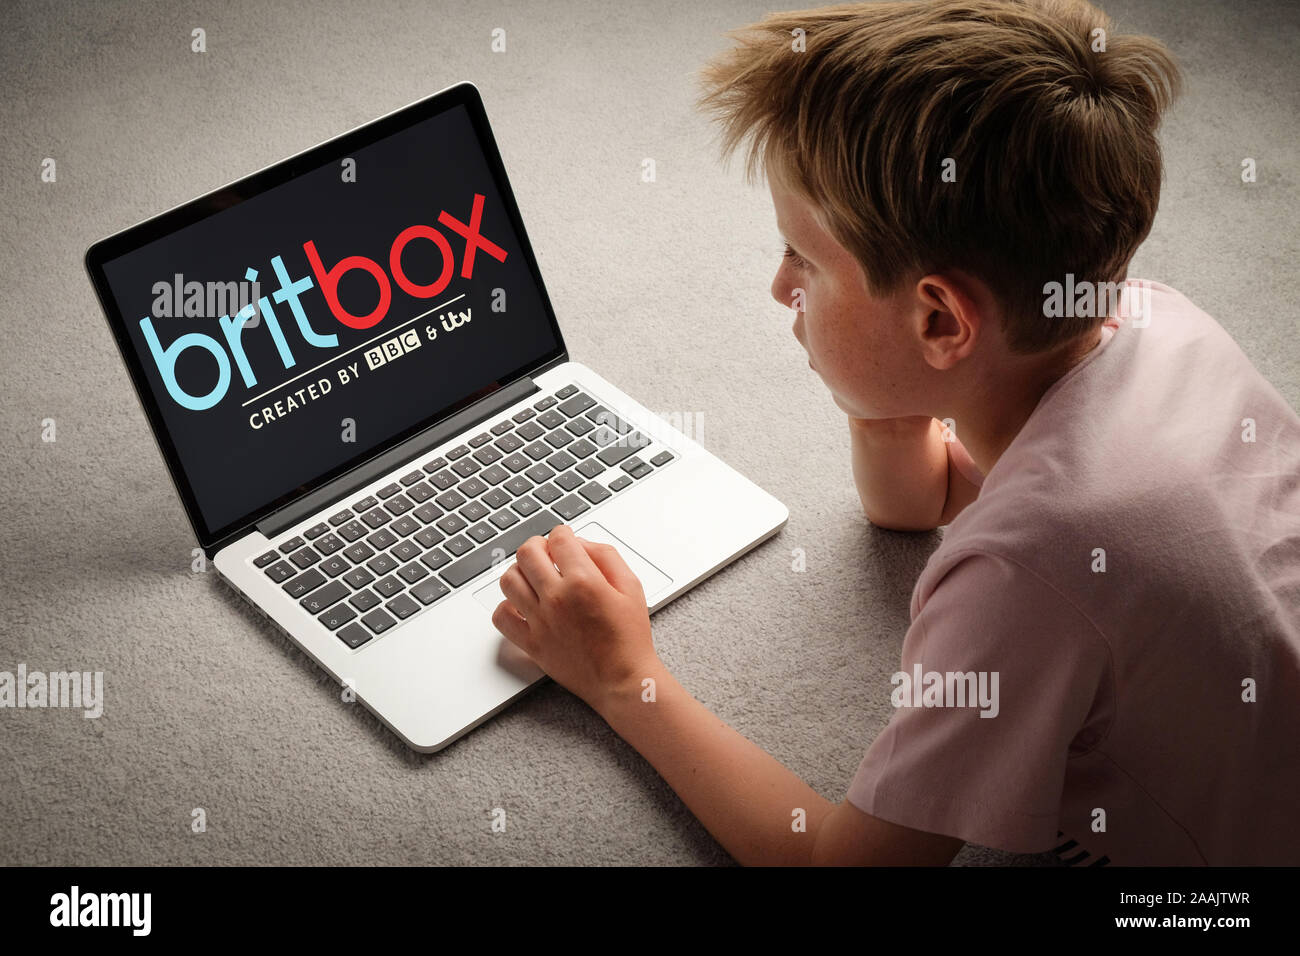 Un jeune garçon regardant britbox sur un ordinateur portable Banque D'Images